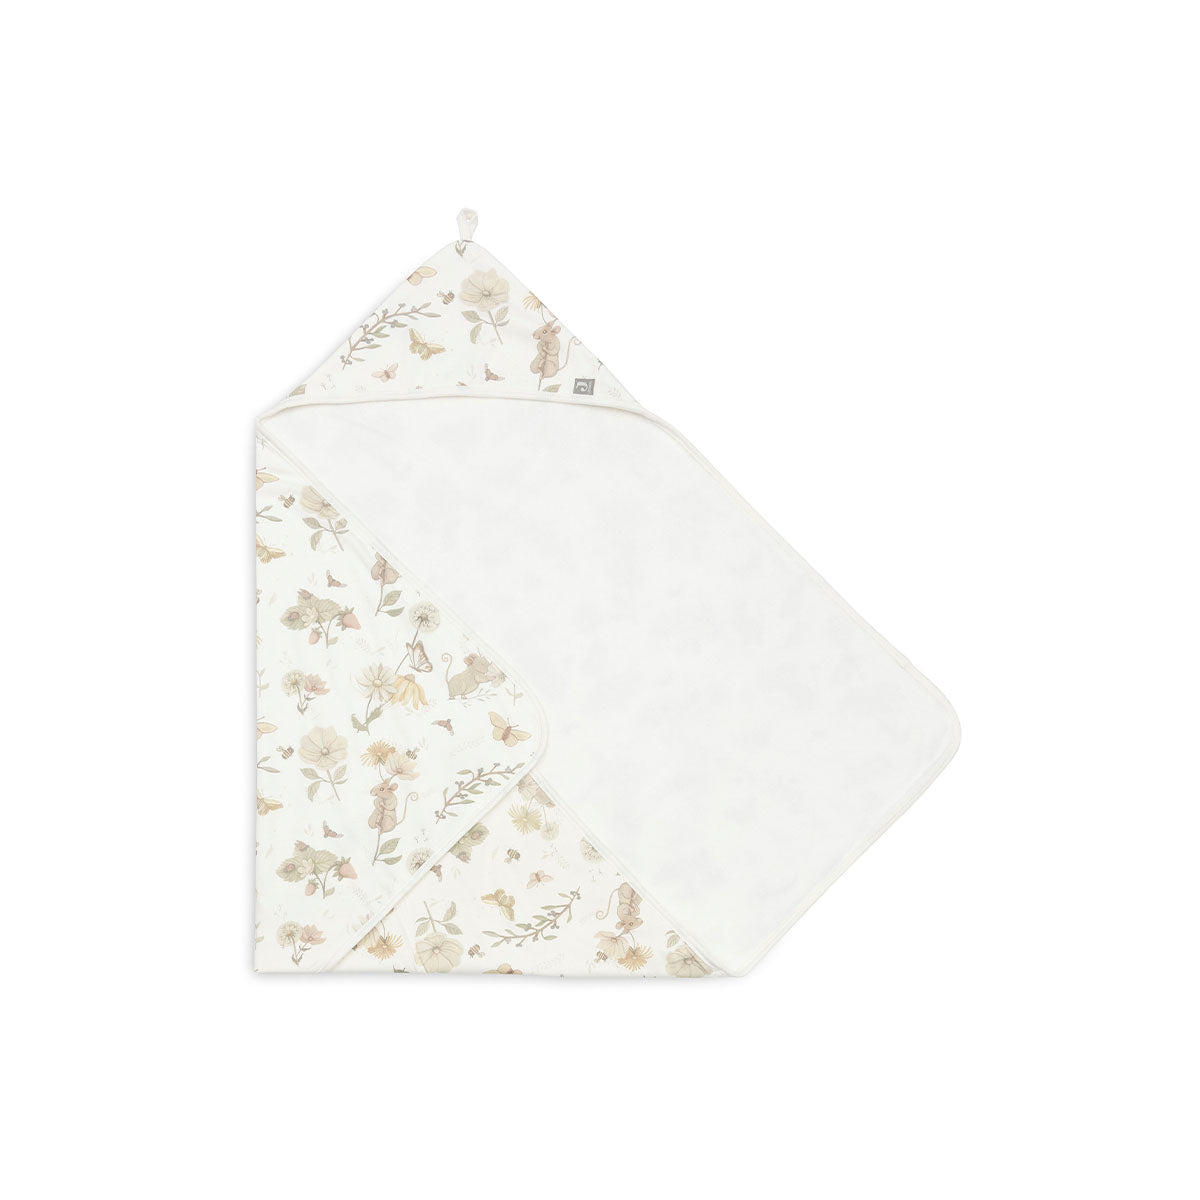 De badcape dreamy mouse van Jollein met lieve print en zachte stof is het perfecte handdoekje voor jouw kindje. De handdoek met capuchon is 75x75 cm en is ideaal om je kindje af te drogen en warm te houden. VanZus